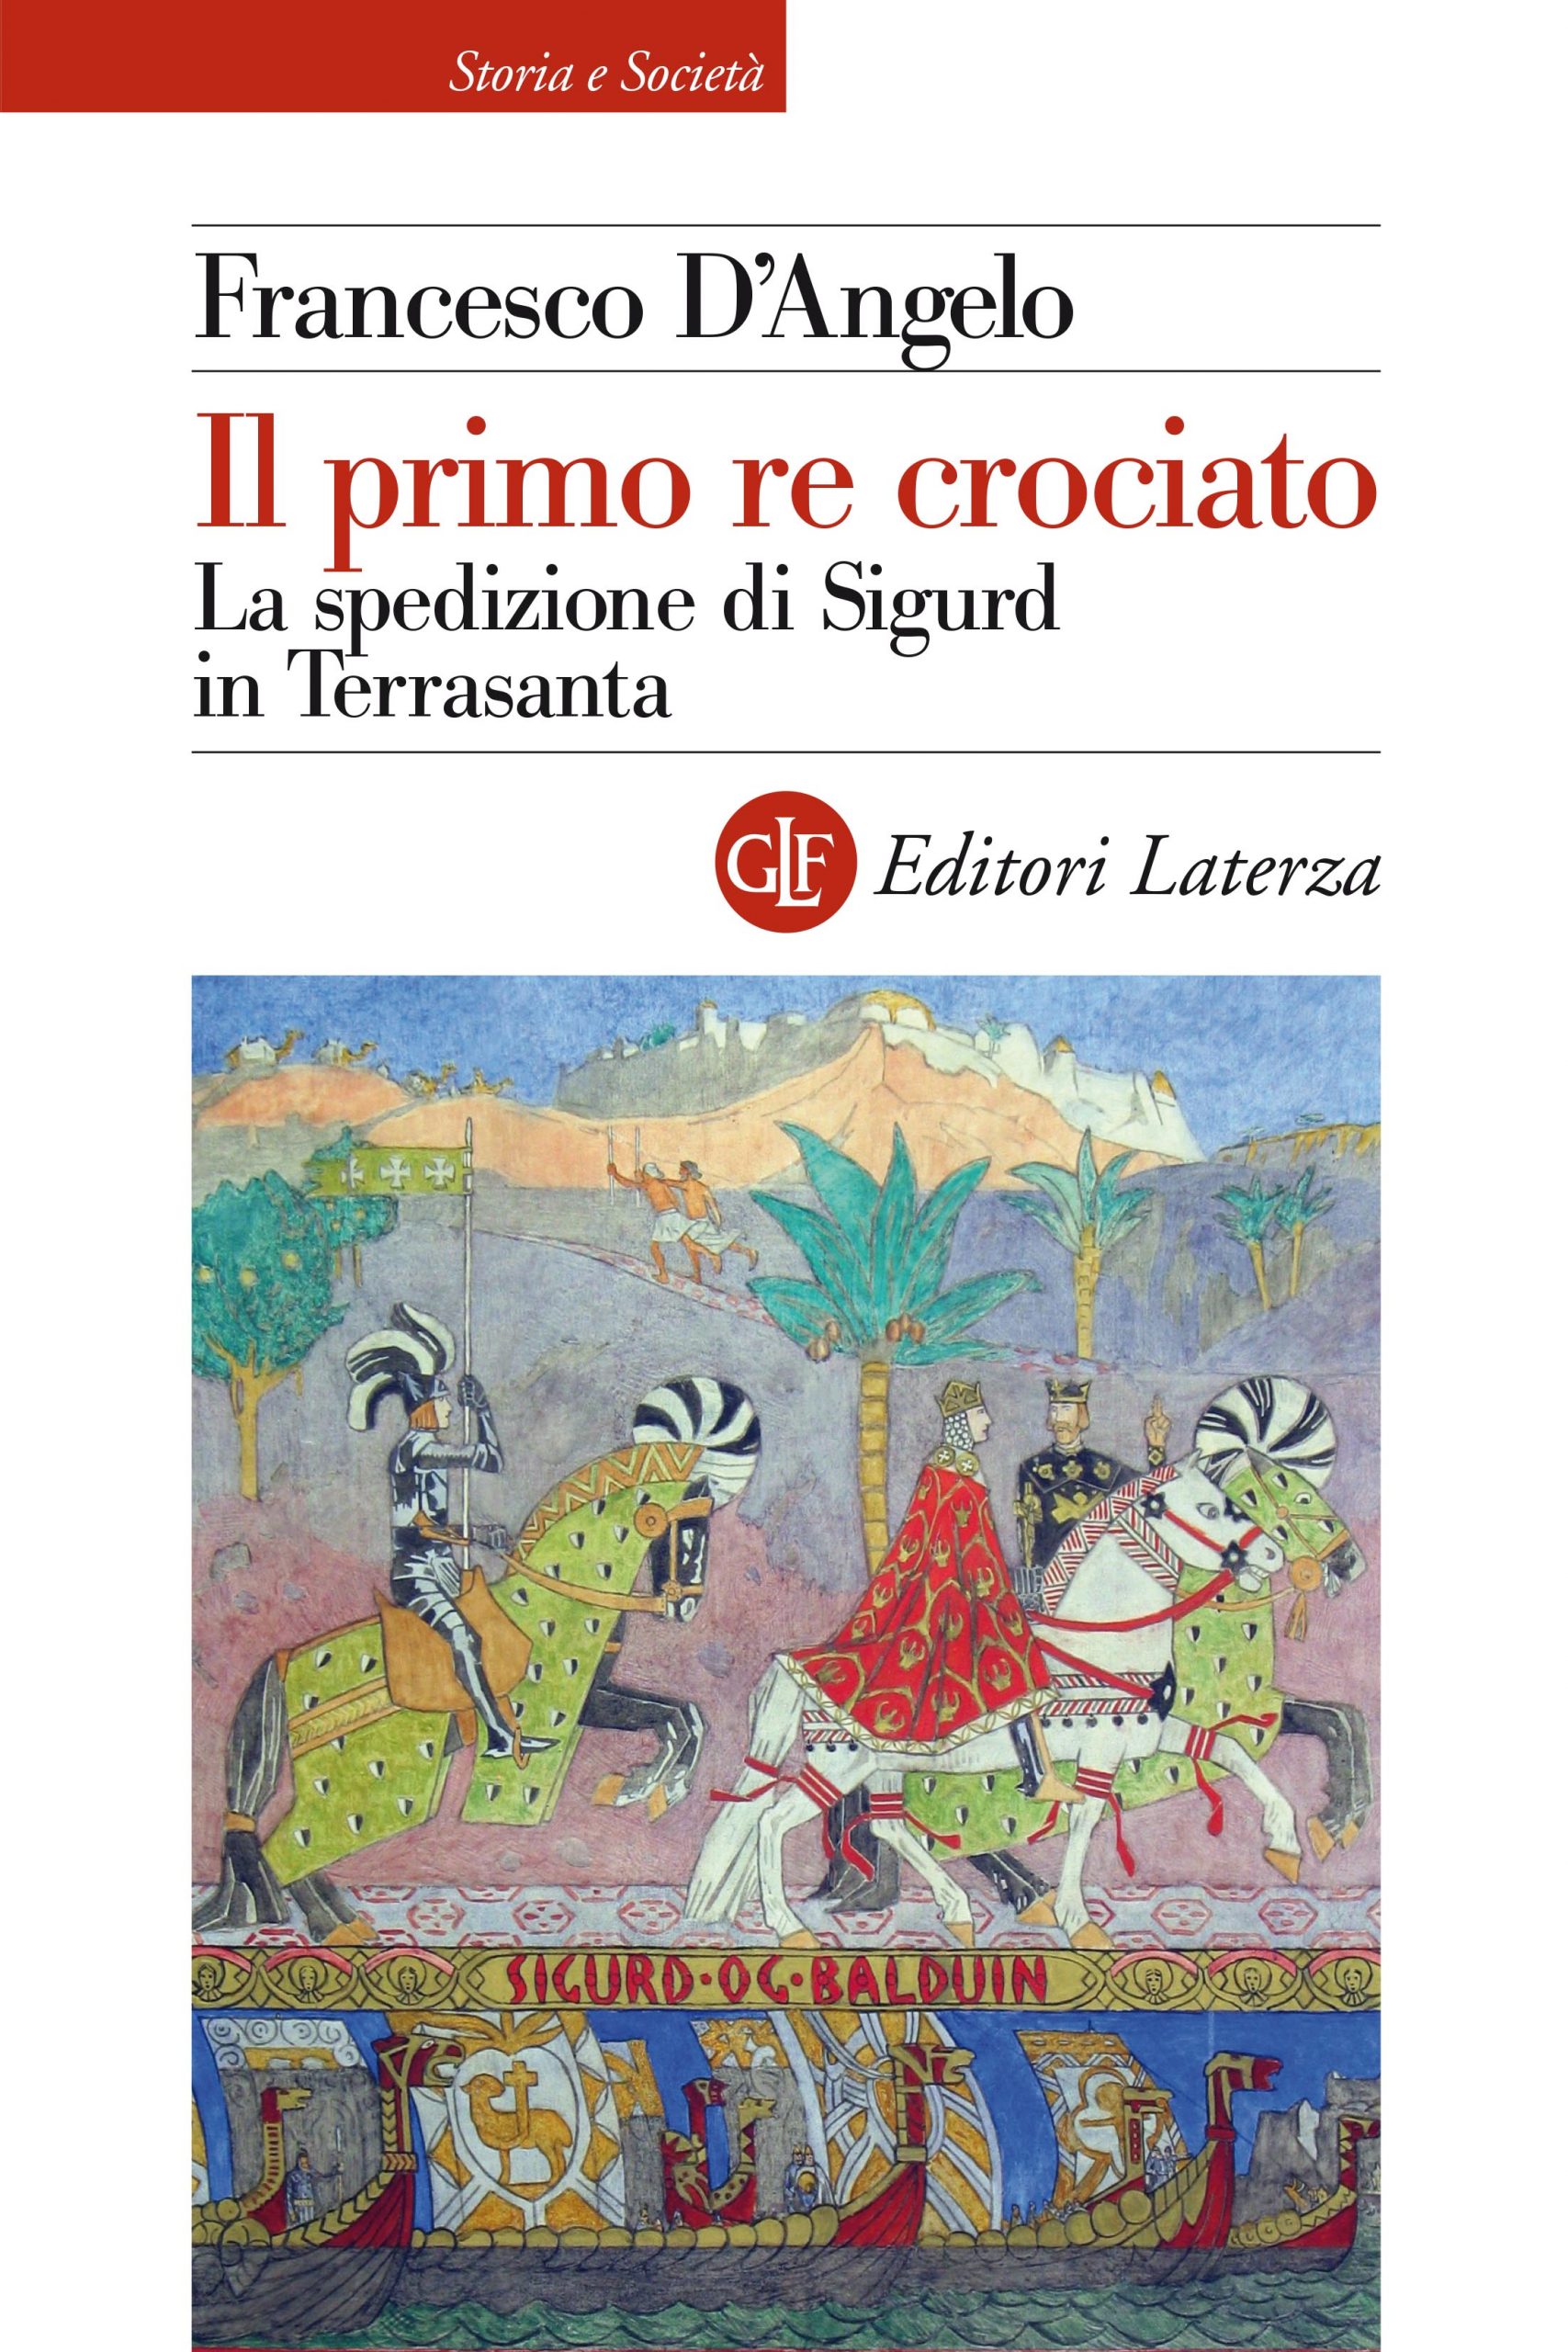 Book cover. Author Francesco D'Angelo